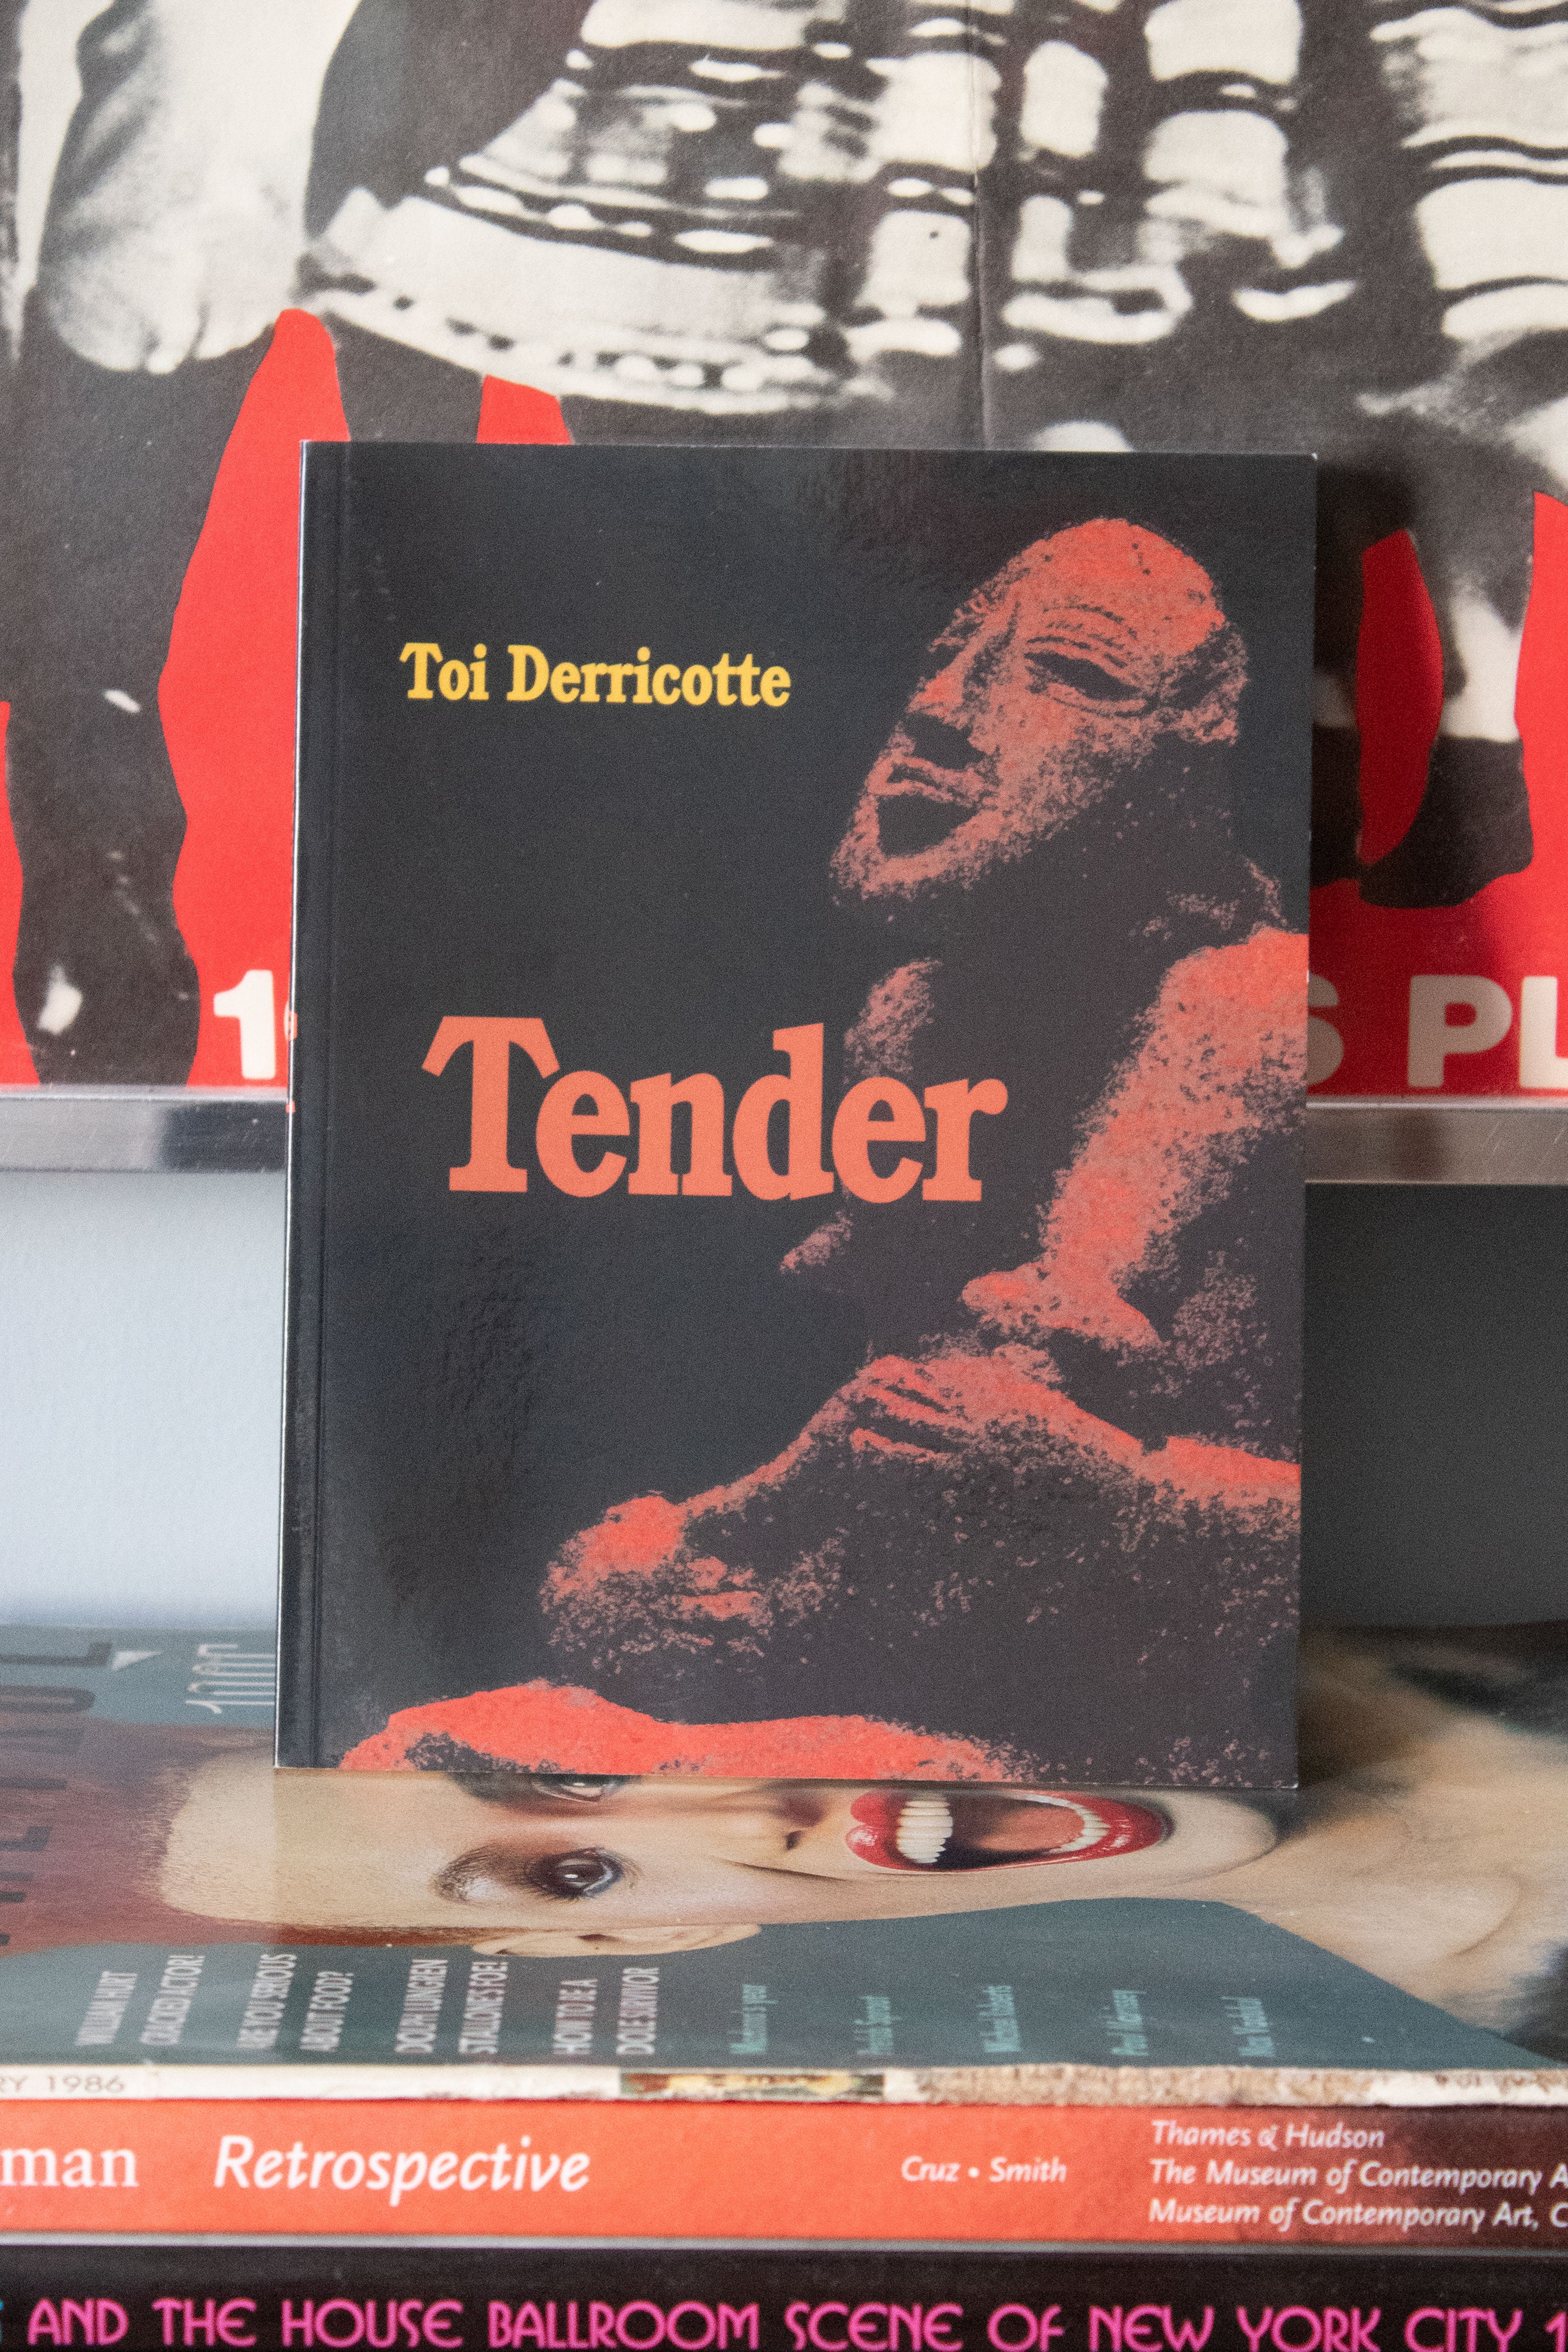 "Tender" by Toi Derricotte